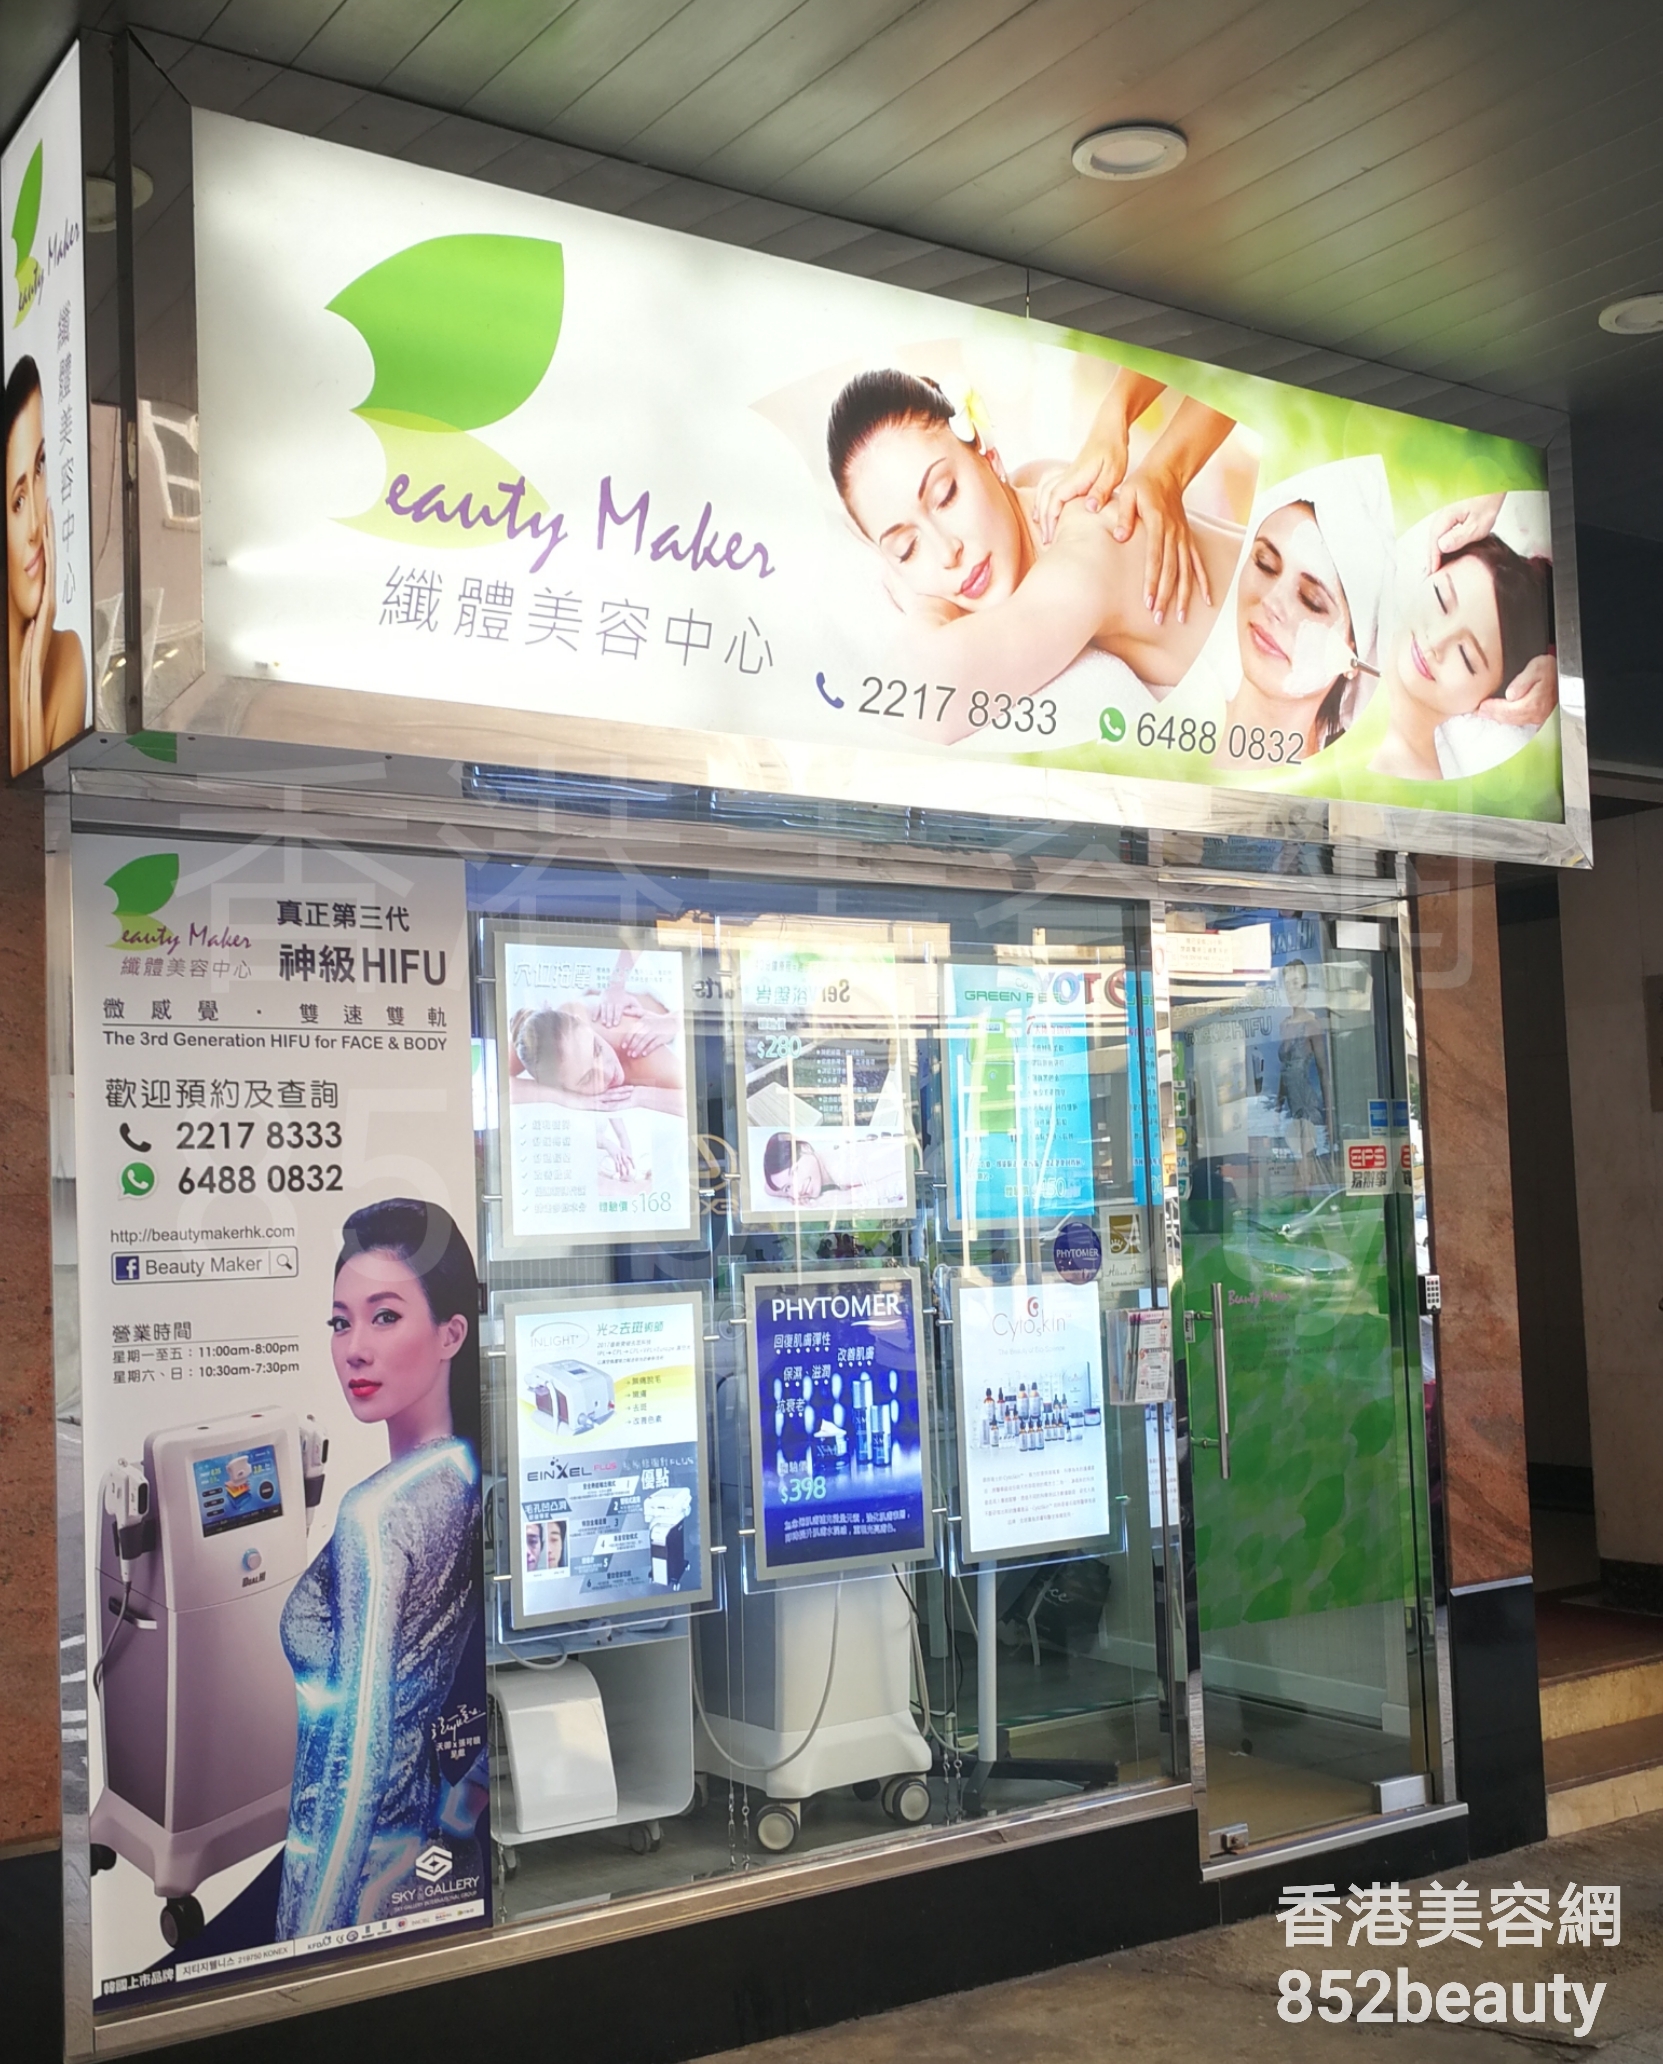 香港美容網 Hong Kong Beauty Salon 美容院 / 美容師: Beauty Maker 纖體美容中心